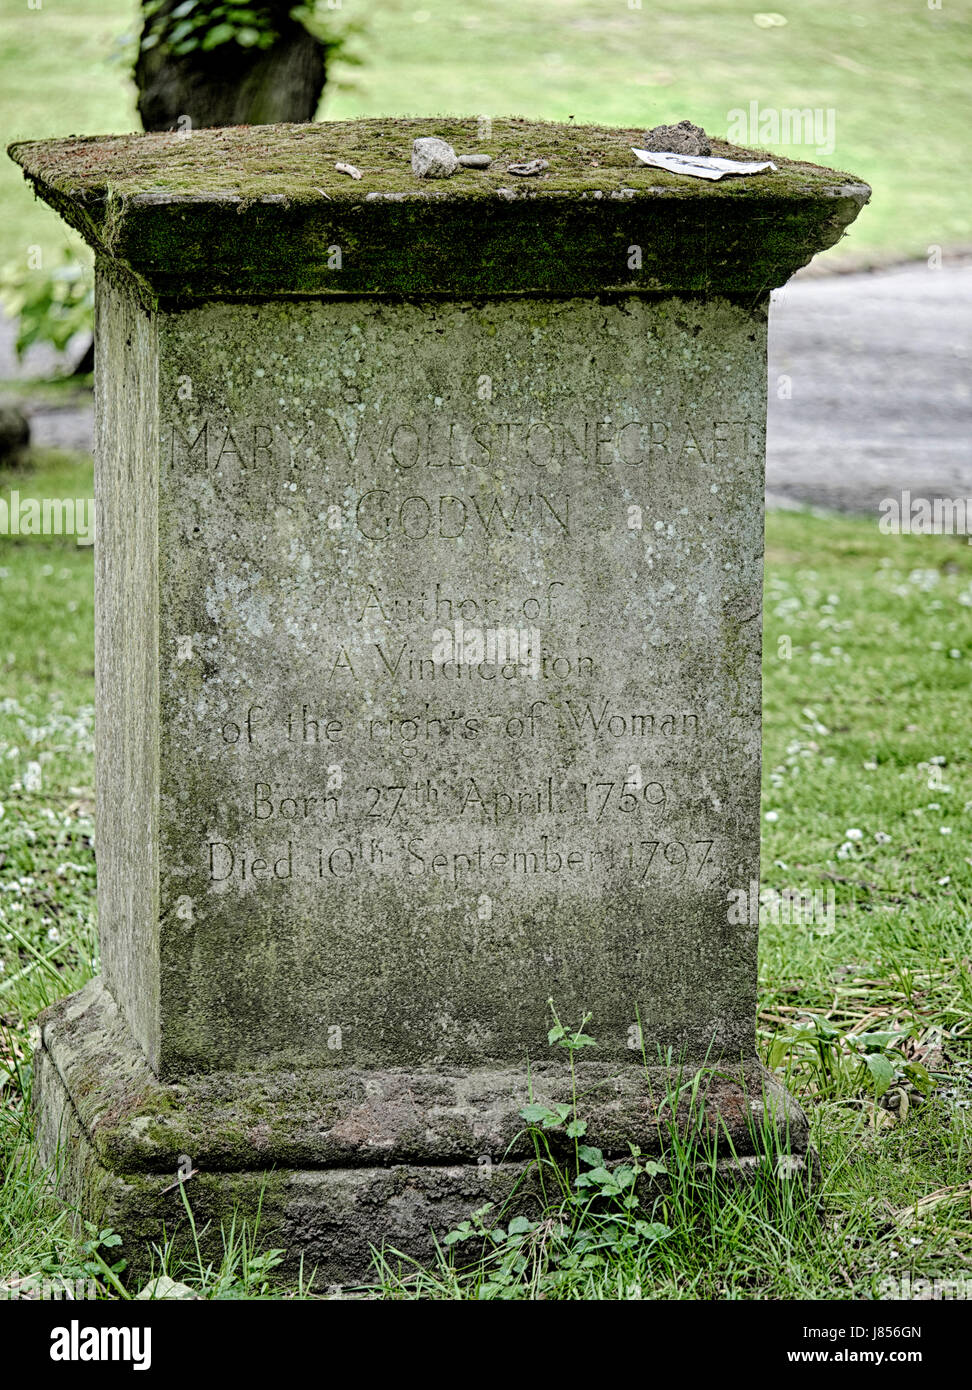 Tomba di Mary Wollstonecraft una scrittrice inglese, filosofo, e l'avvocato dei diritti della donna in St Pancras vecchia chiesa del cimitero vicino a King's Cross Foto Stock